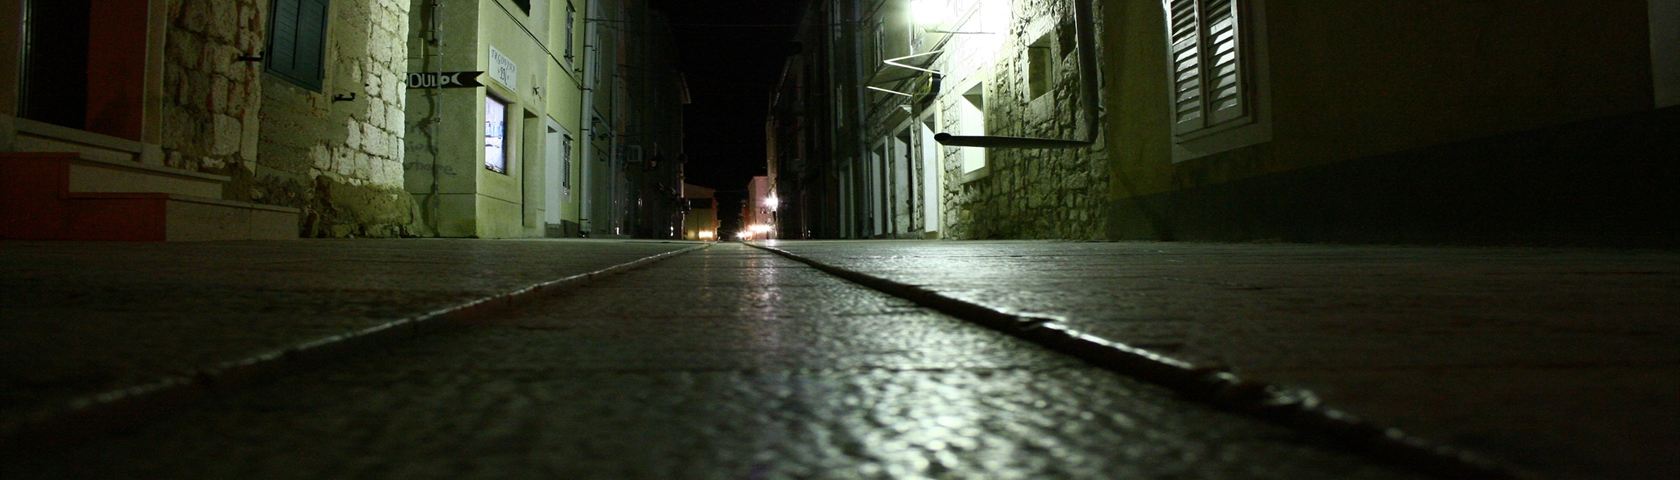 Street by Night